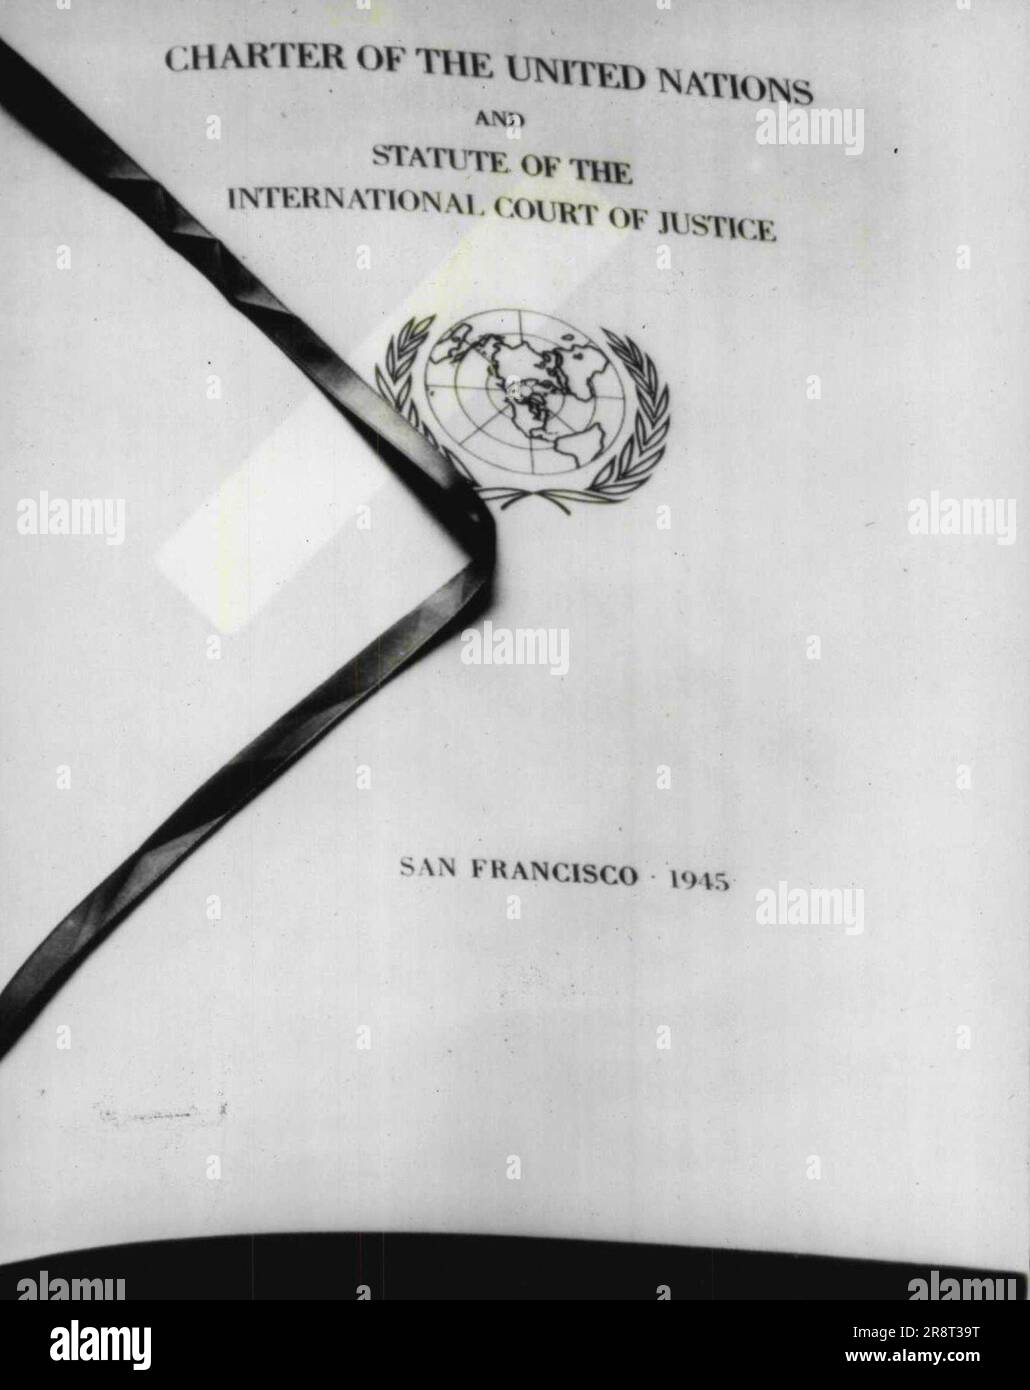 Pagina del titolo del Capitolo delle Nazioni Unite -- questa è la pagina del titolo del capitolo delle Nazioni Unite firmato qui il 26 giugno al termine della Conferenza delle Nazioni Unite. Giugno 28, 1945. (Foto di AP Wirephoto) Foto Stock